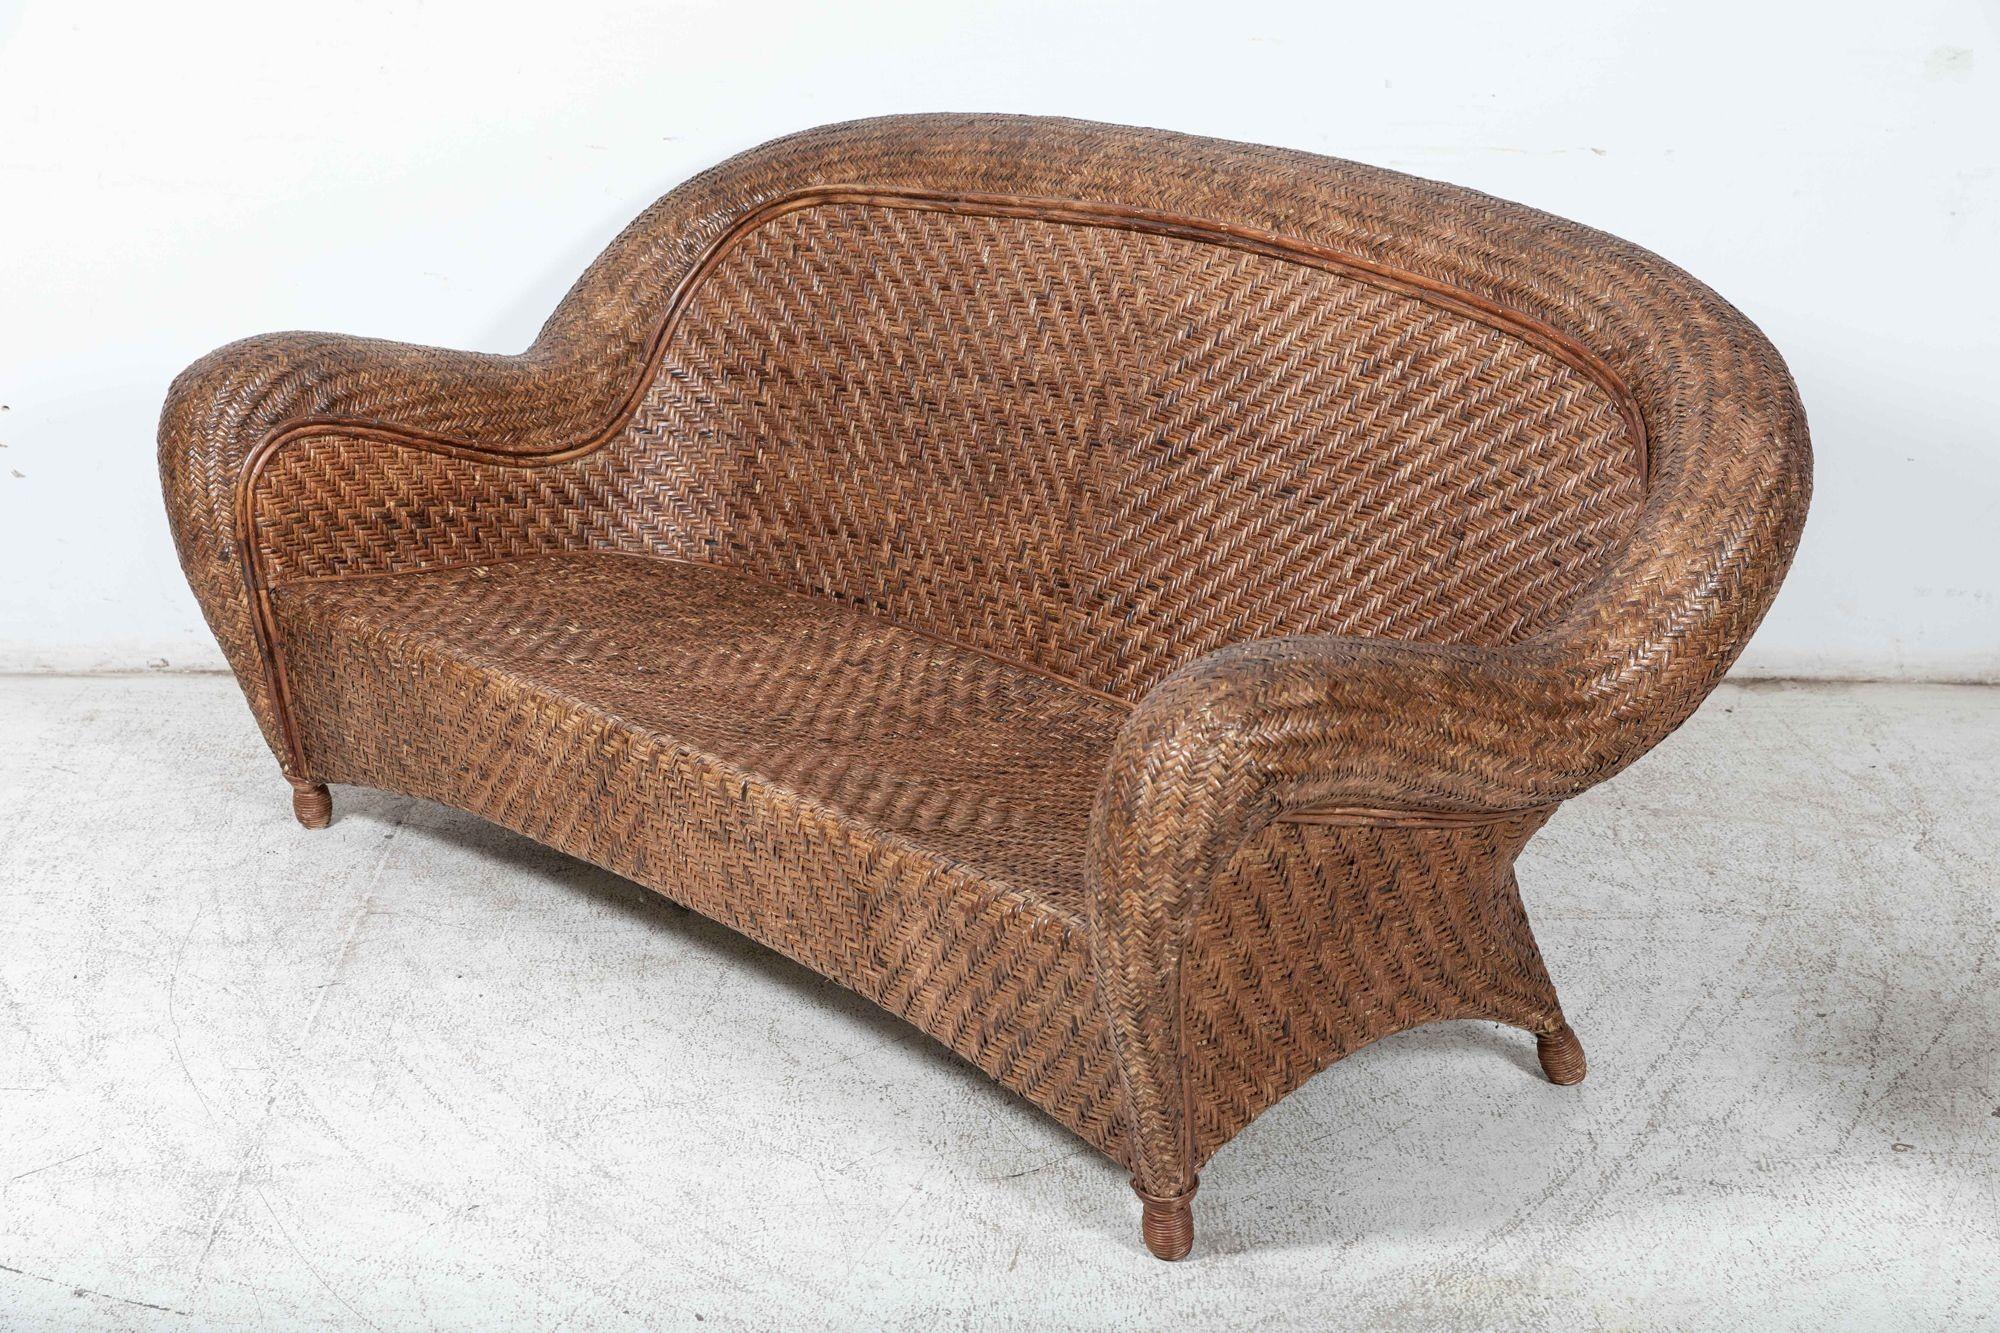 vers 1930
Ensemble de canapés français en rotin de bambou comprenant un canapé, un fauteuil et une table basse
Forme et patine excellentes
sku 1089
Canapé L186 x P61 x H87 cm
Chaise L88 x P61 x H87 cm
Table basse L93 x P63 x H36 cm.